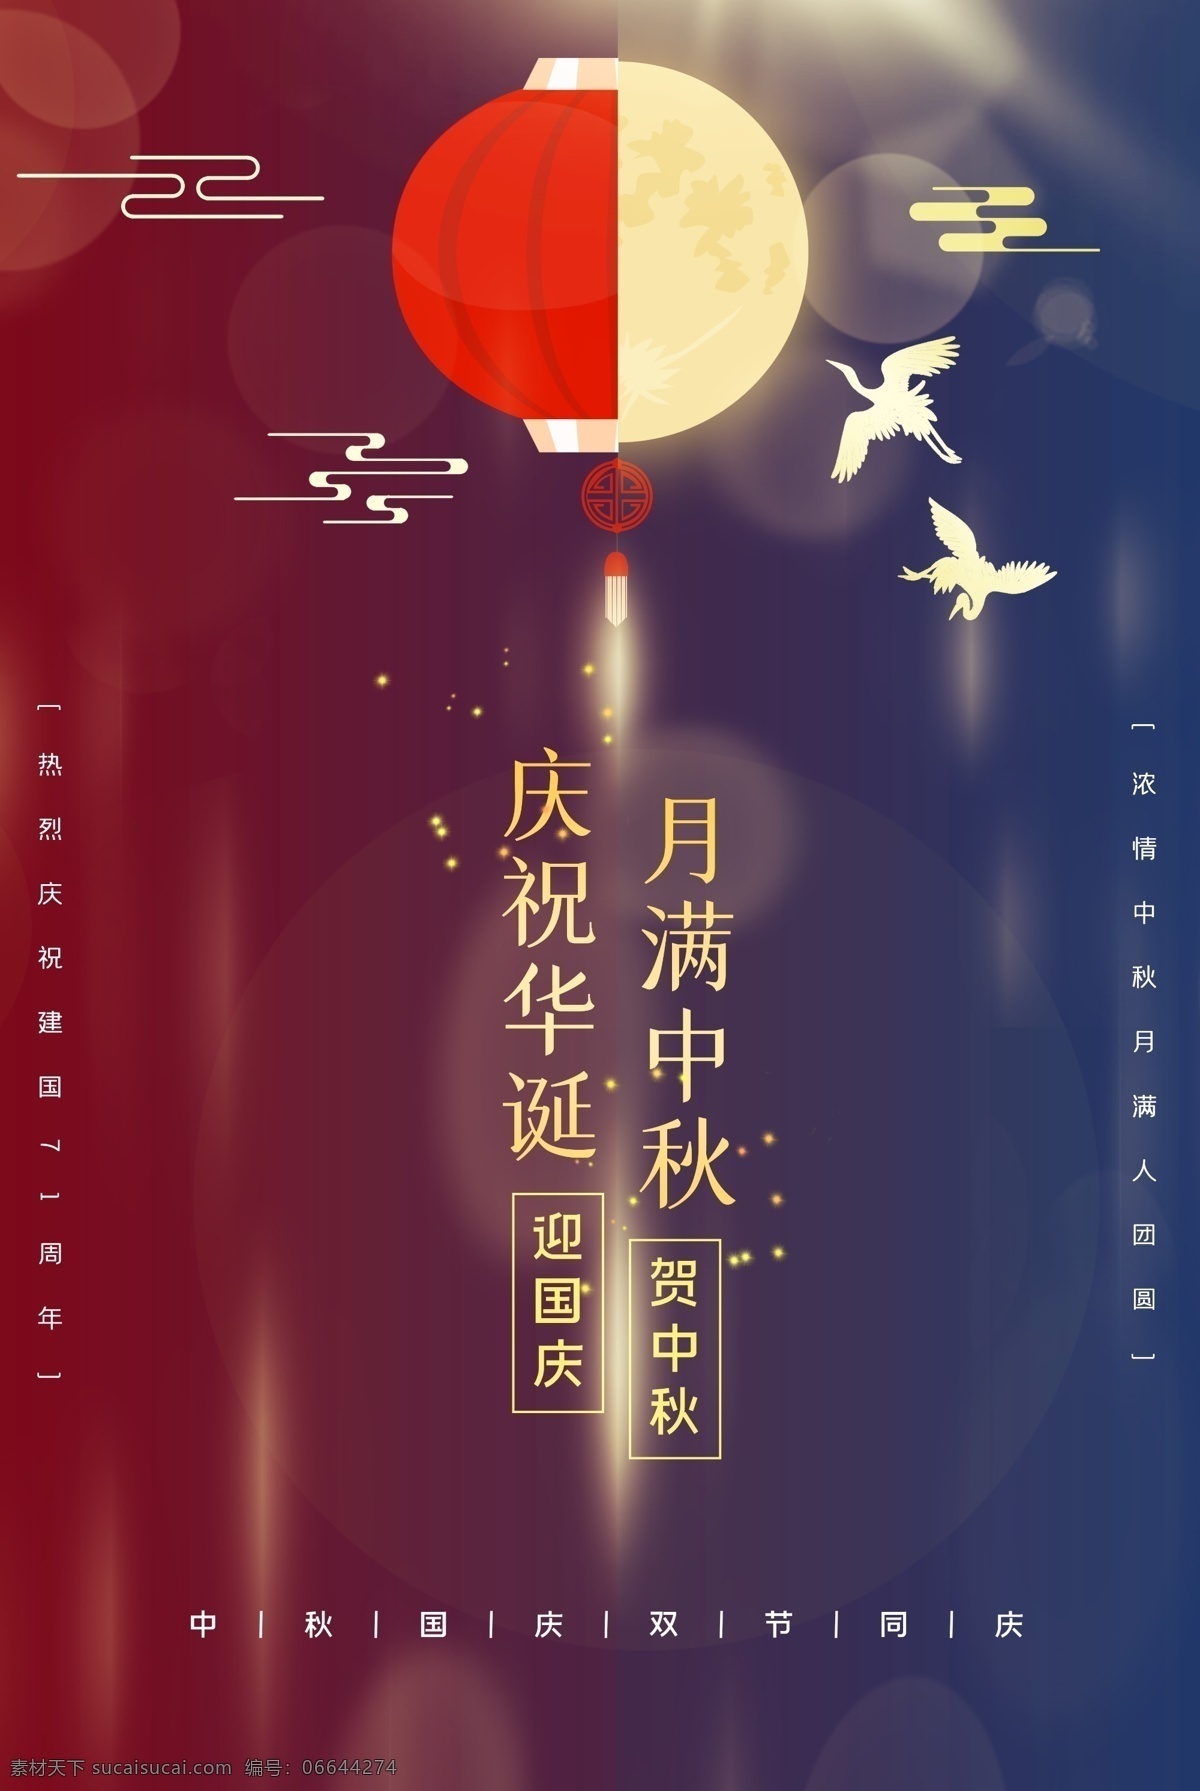 月圆 中秋 传统节日 活动 海报 素材图片 月圆中秋 传统 节日